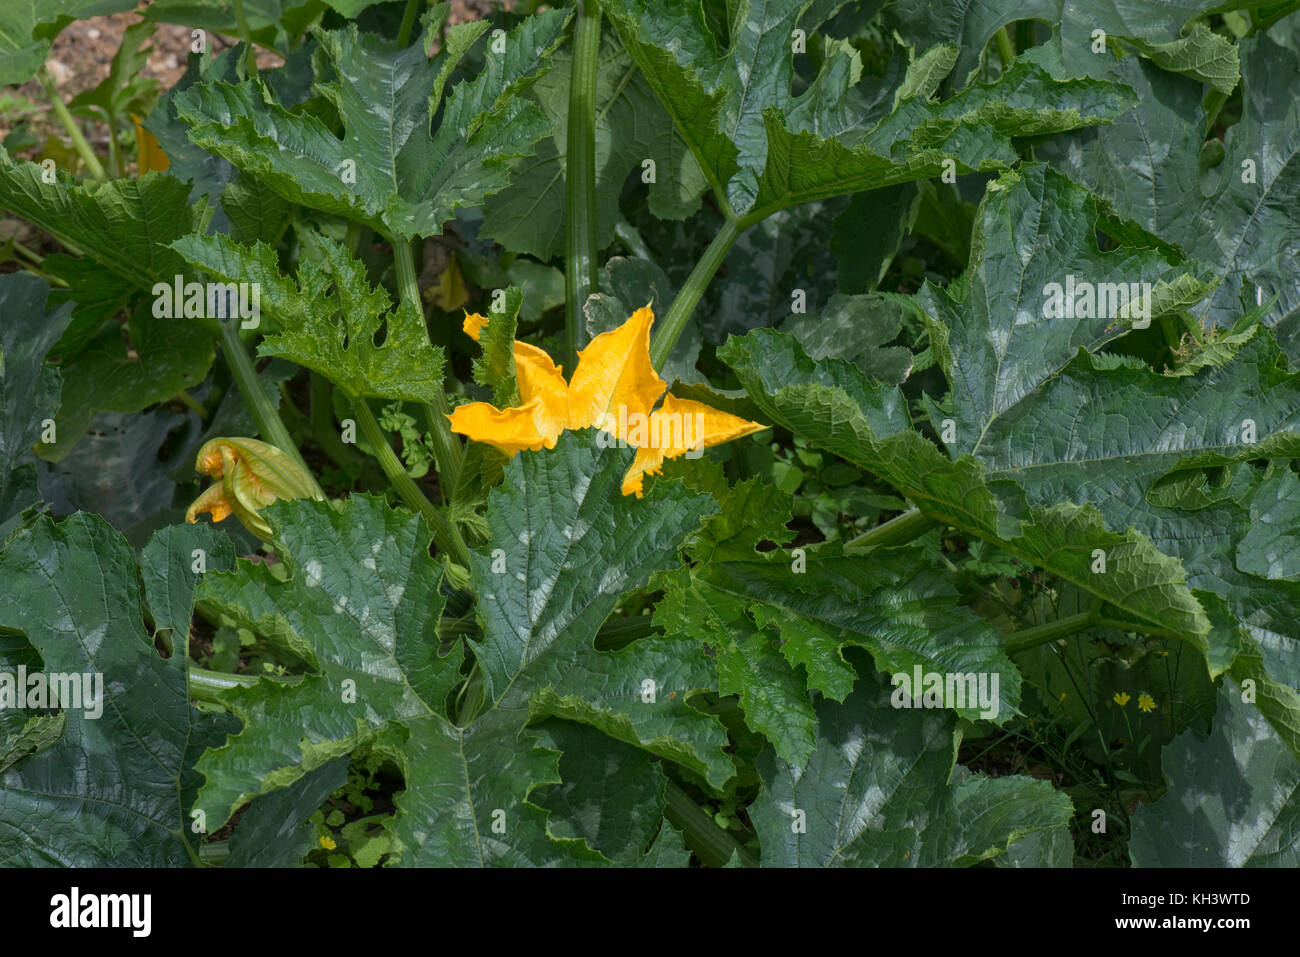 Les fleurs mâles et femelles jaune sur un plant de courgette courgette ou avec les jeunes les fruits sous bold type cucurbitacées feuilles vert foncé Banque D'Images